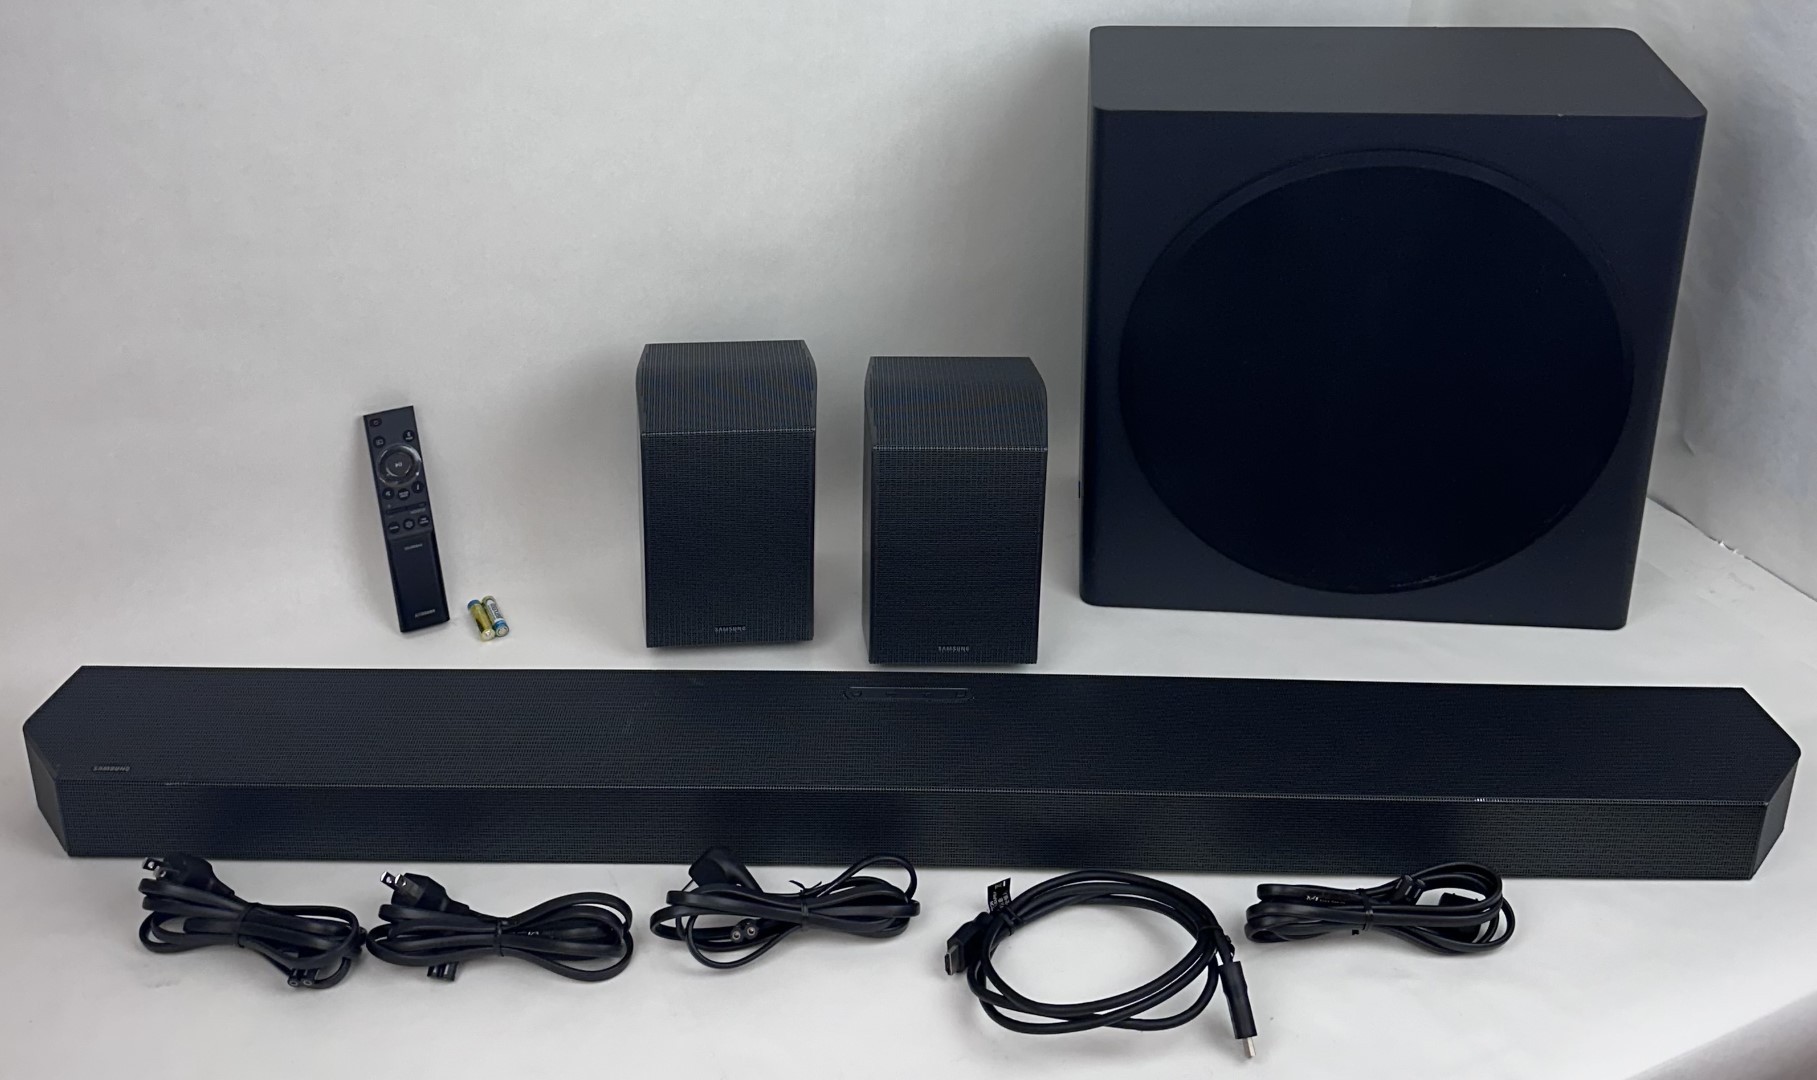 Samsung Q-Series 9.1.4ch Wireless True Dolby Atmos Soundbar HW-Q930C Black 261W 